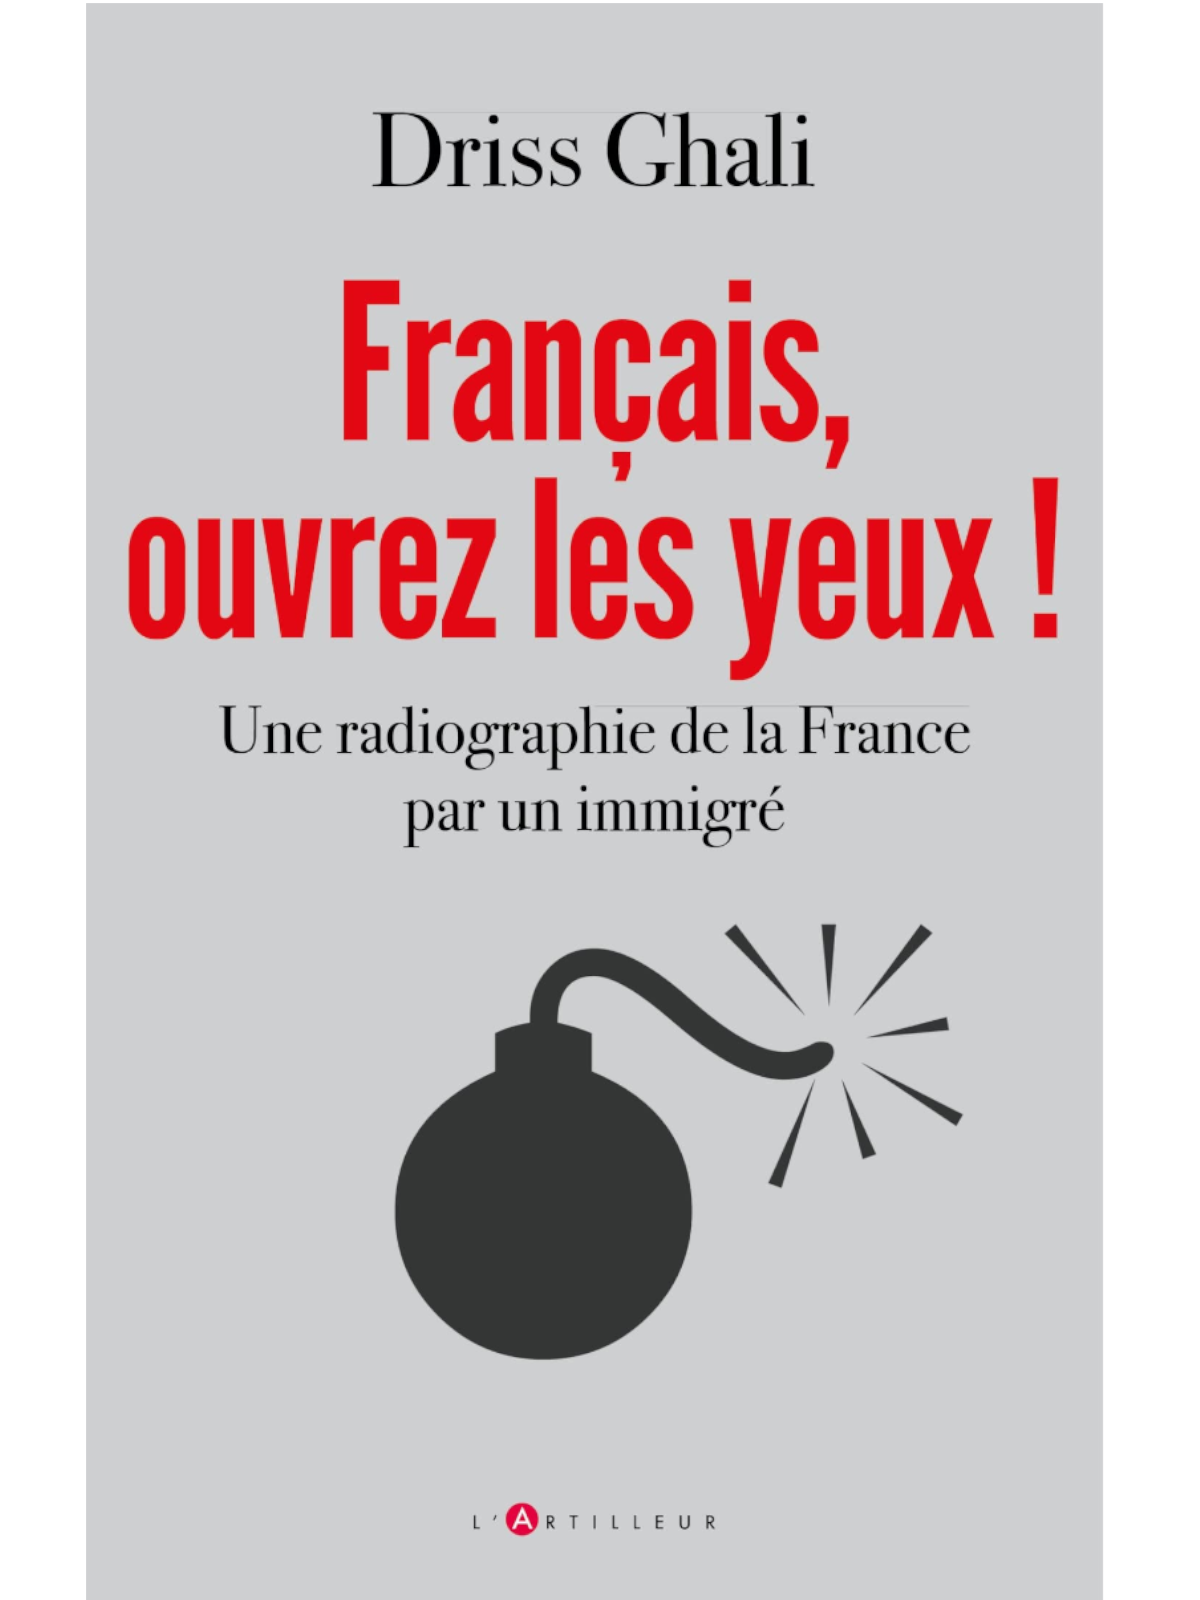 Driss Ghali : Français, ouvrez les yeux !